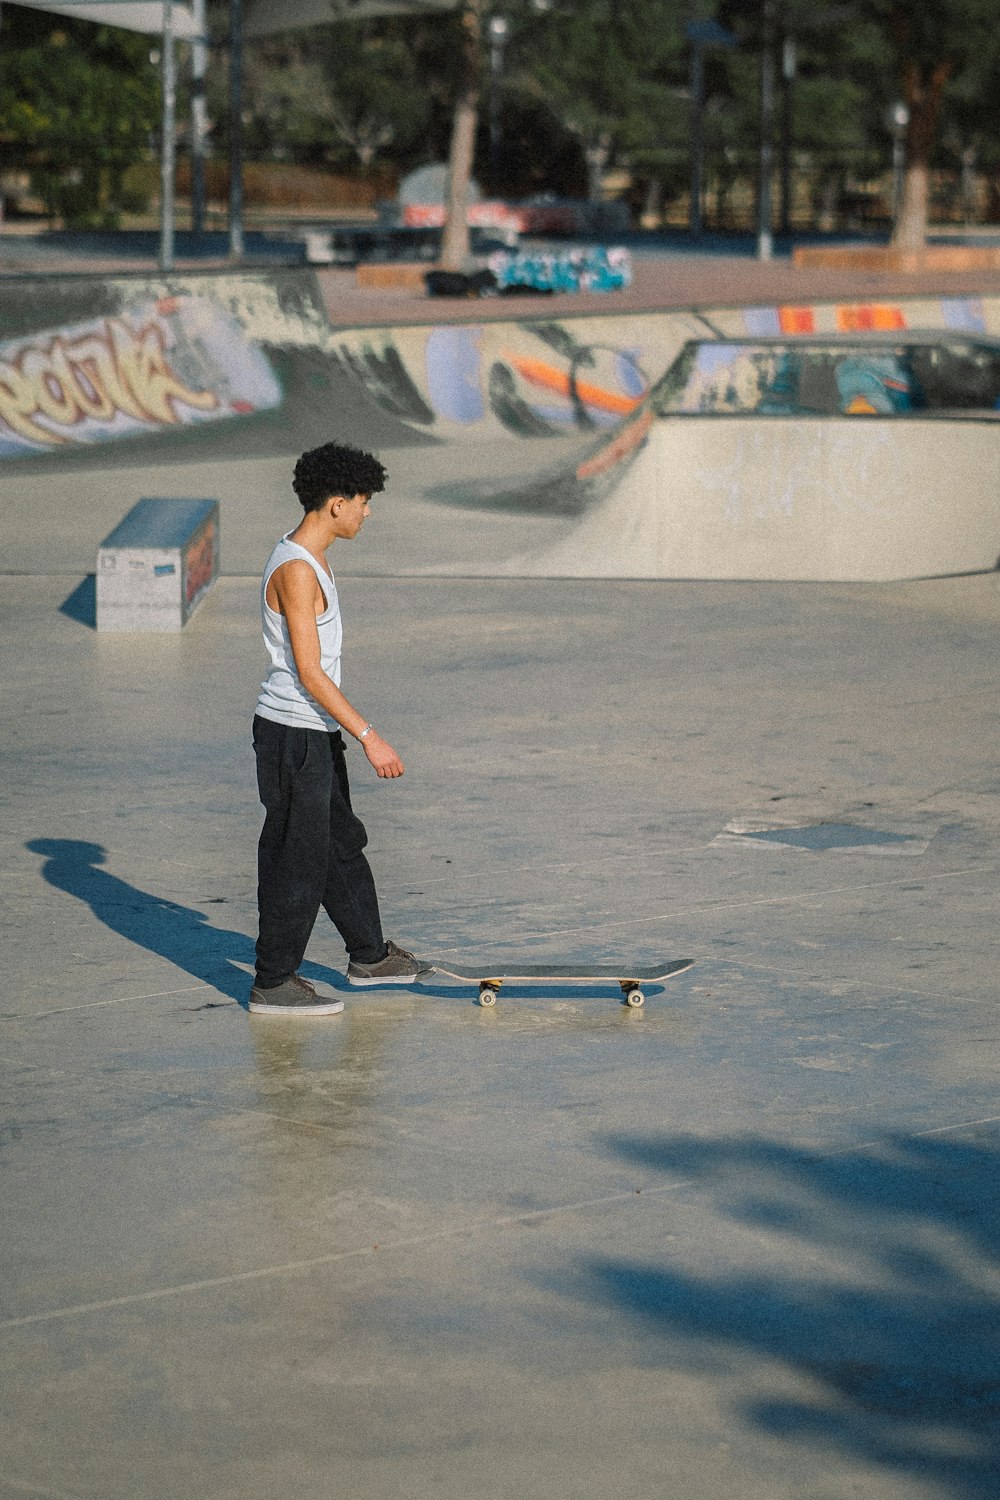 a young boy riding a skateboard at a skate park